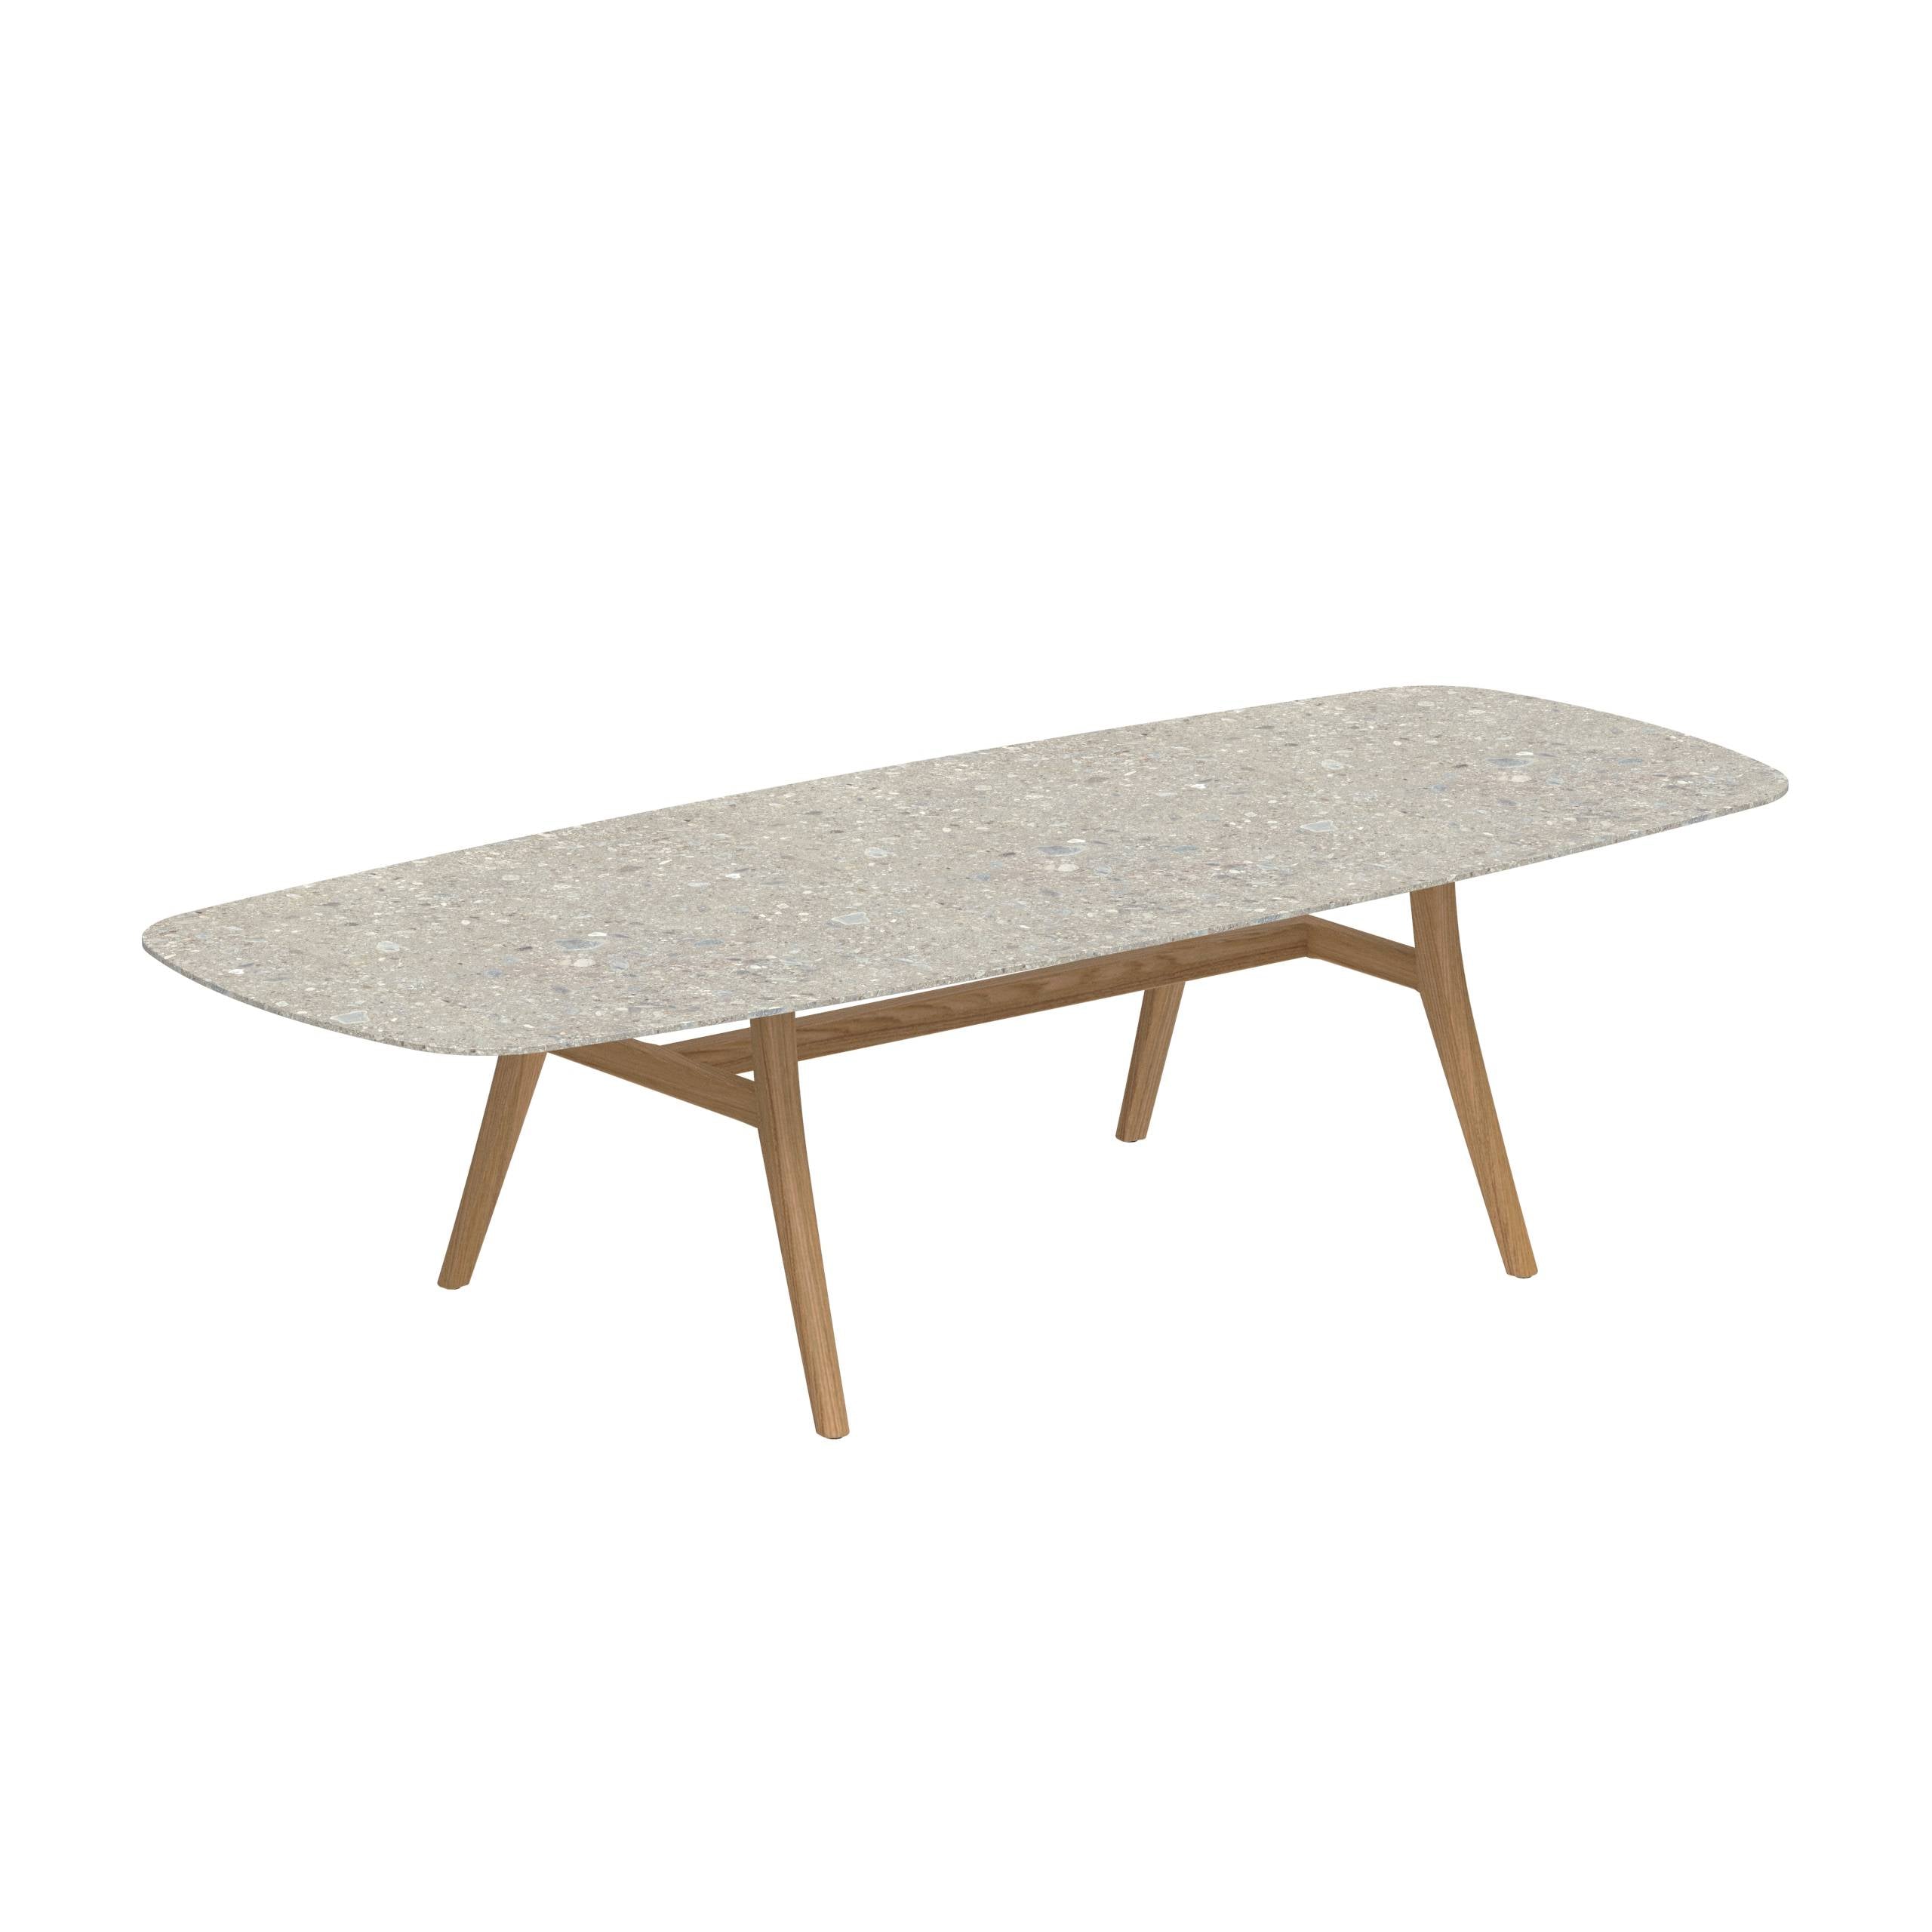 Zidiz Table 300x120cm Ceramic Ceppo Dolomitica